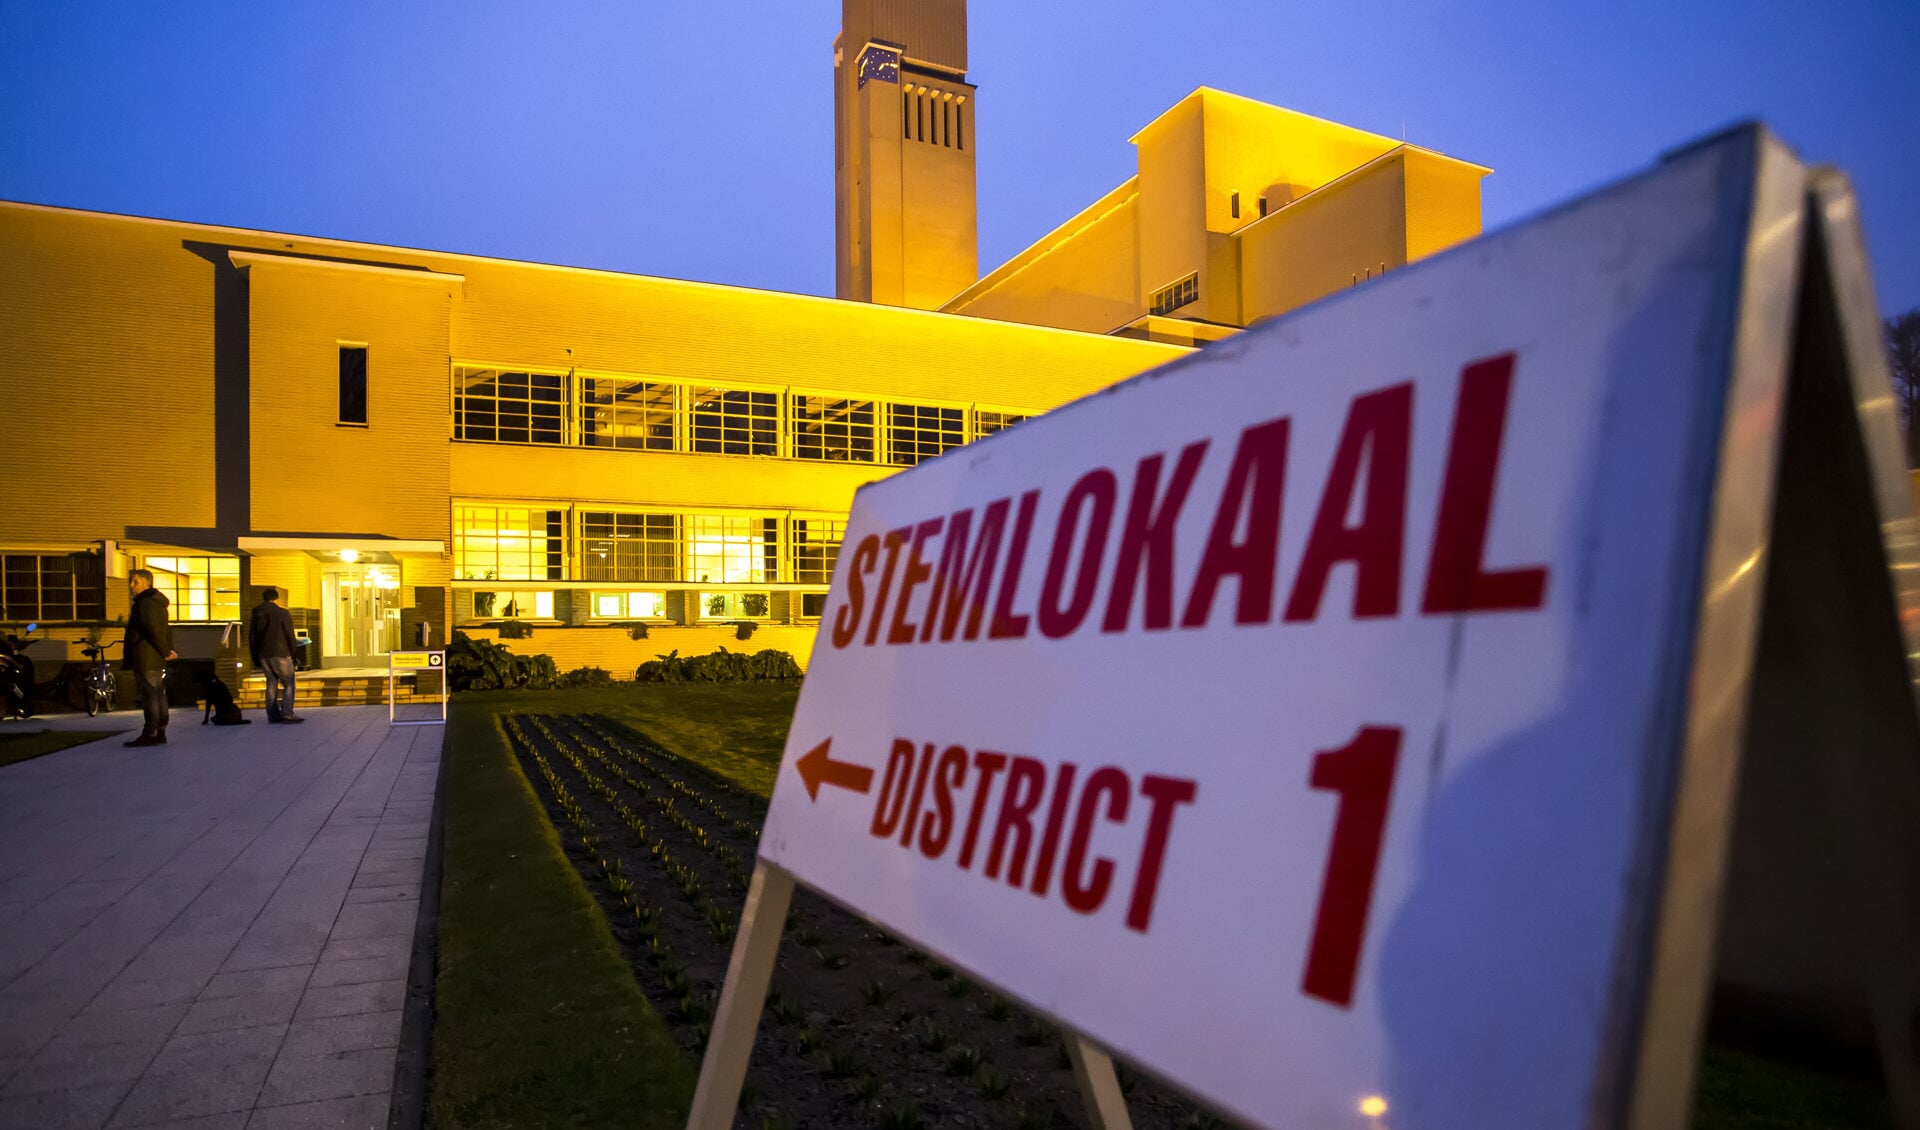 stemmen gemeentehuis Hilversum 